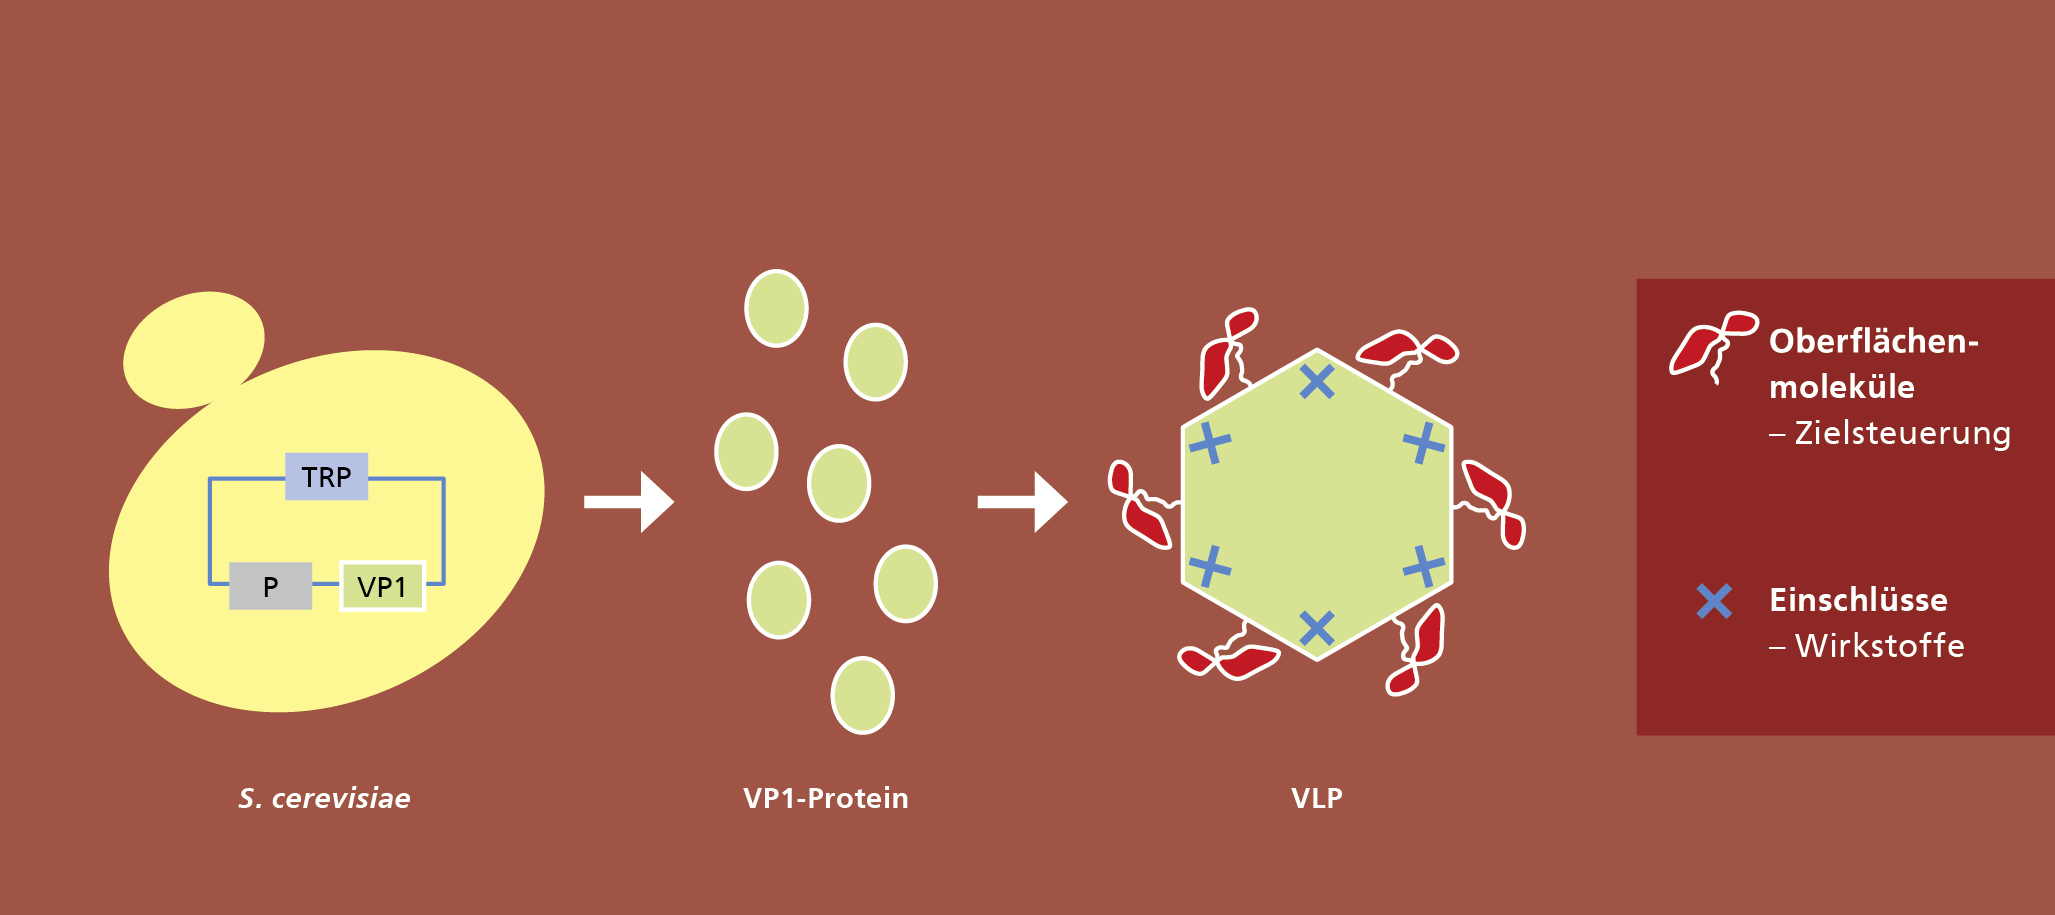 Plattformtechnologie zur Herstellung von Virus-like particles (VLPs). 